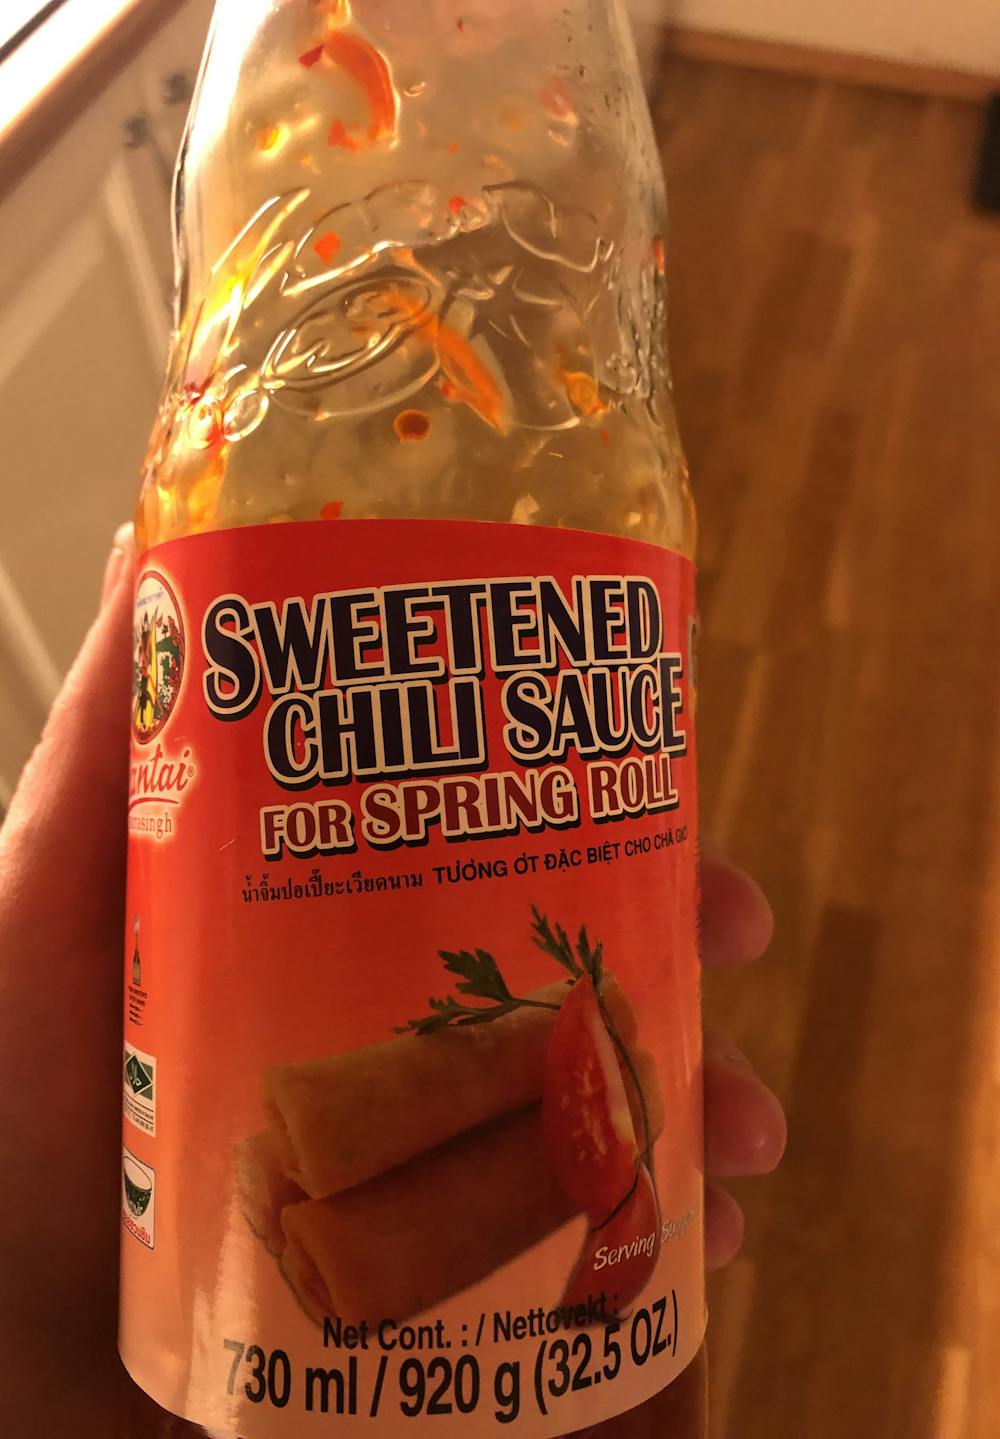 Sweetened chili sauce